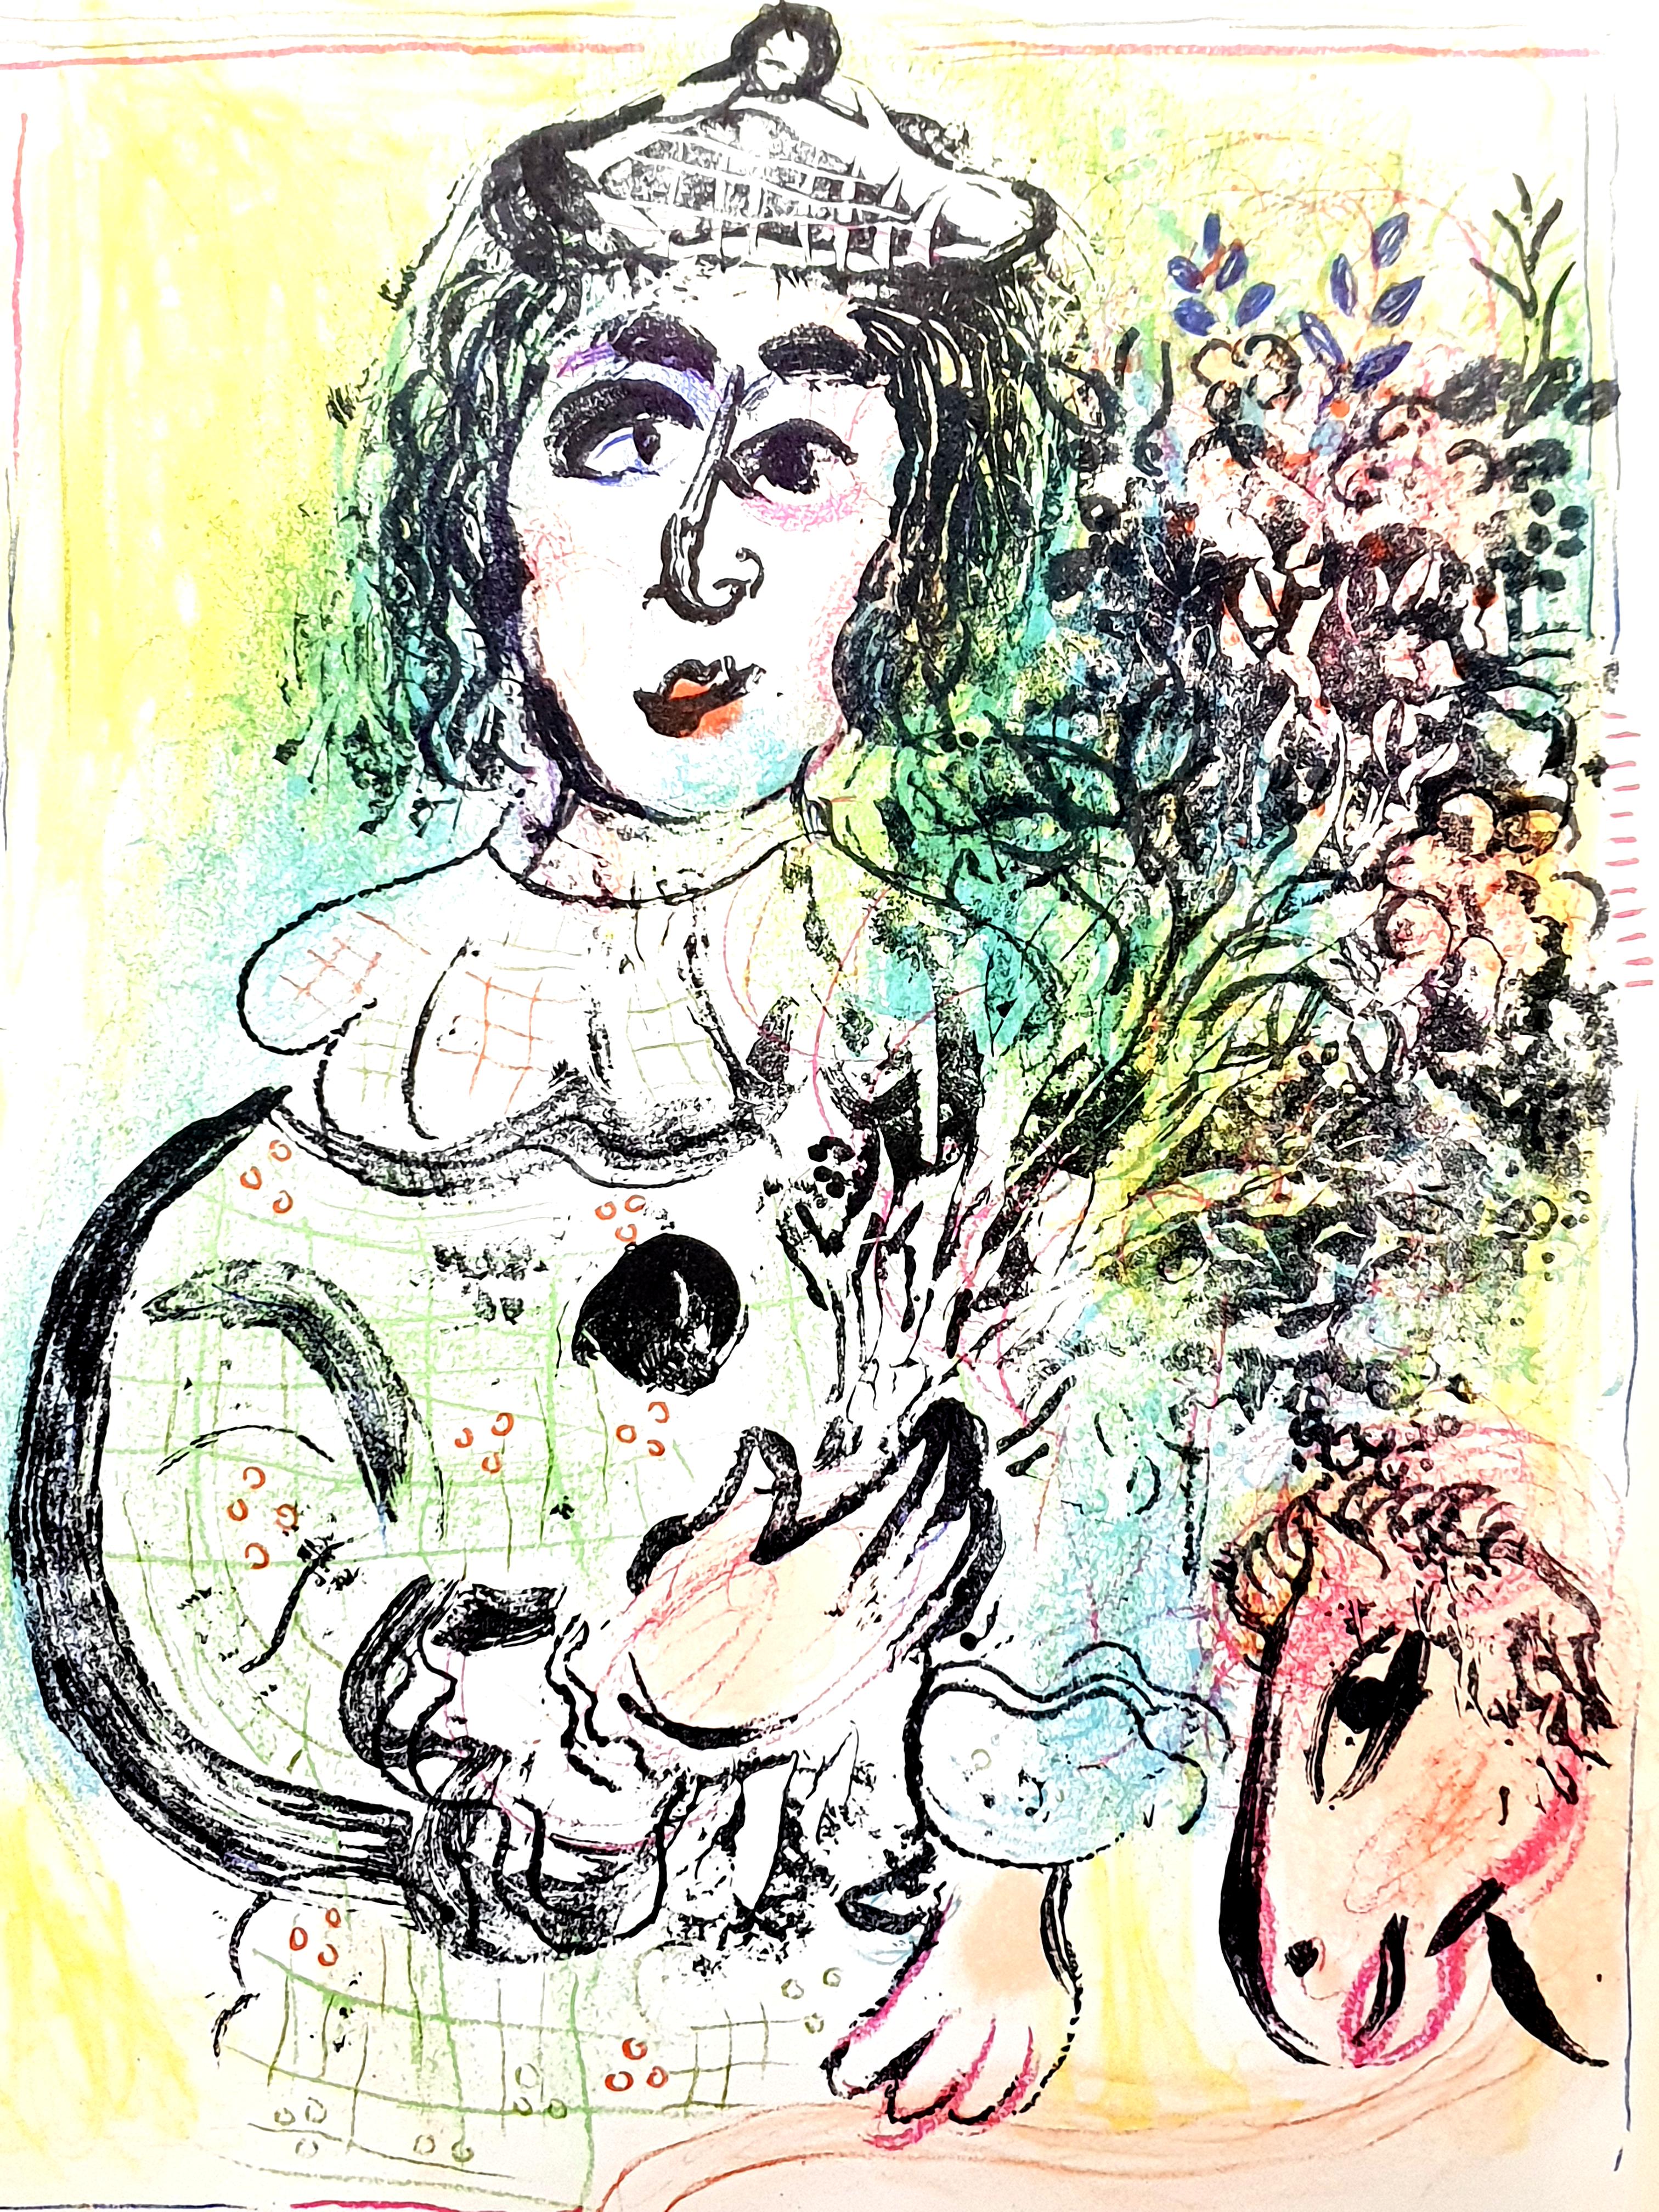 Marc Chagall
Original-Lithographie
1963
Abmessungen: 32 x 24 cm
Von Chagall Lithographie II
Referenz: Mourlot 399
Zustand: Ausgezeichnet
Unsigniert und nicht nummeriert wie ausgestellt